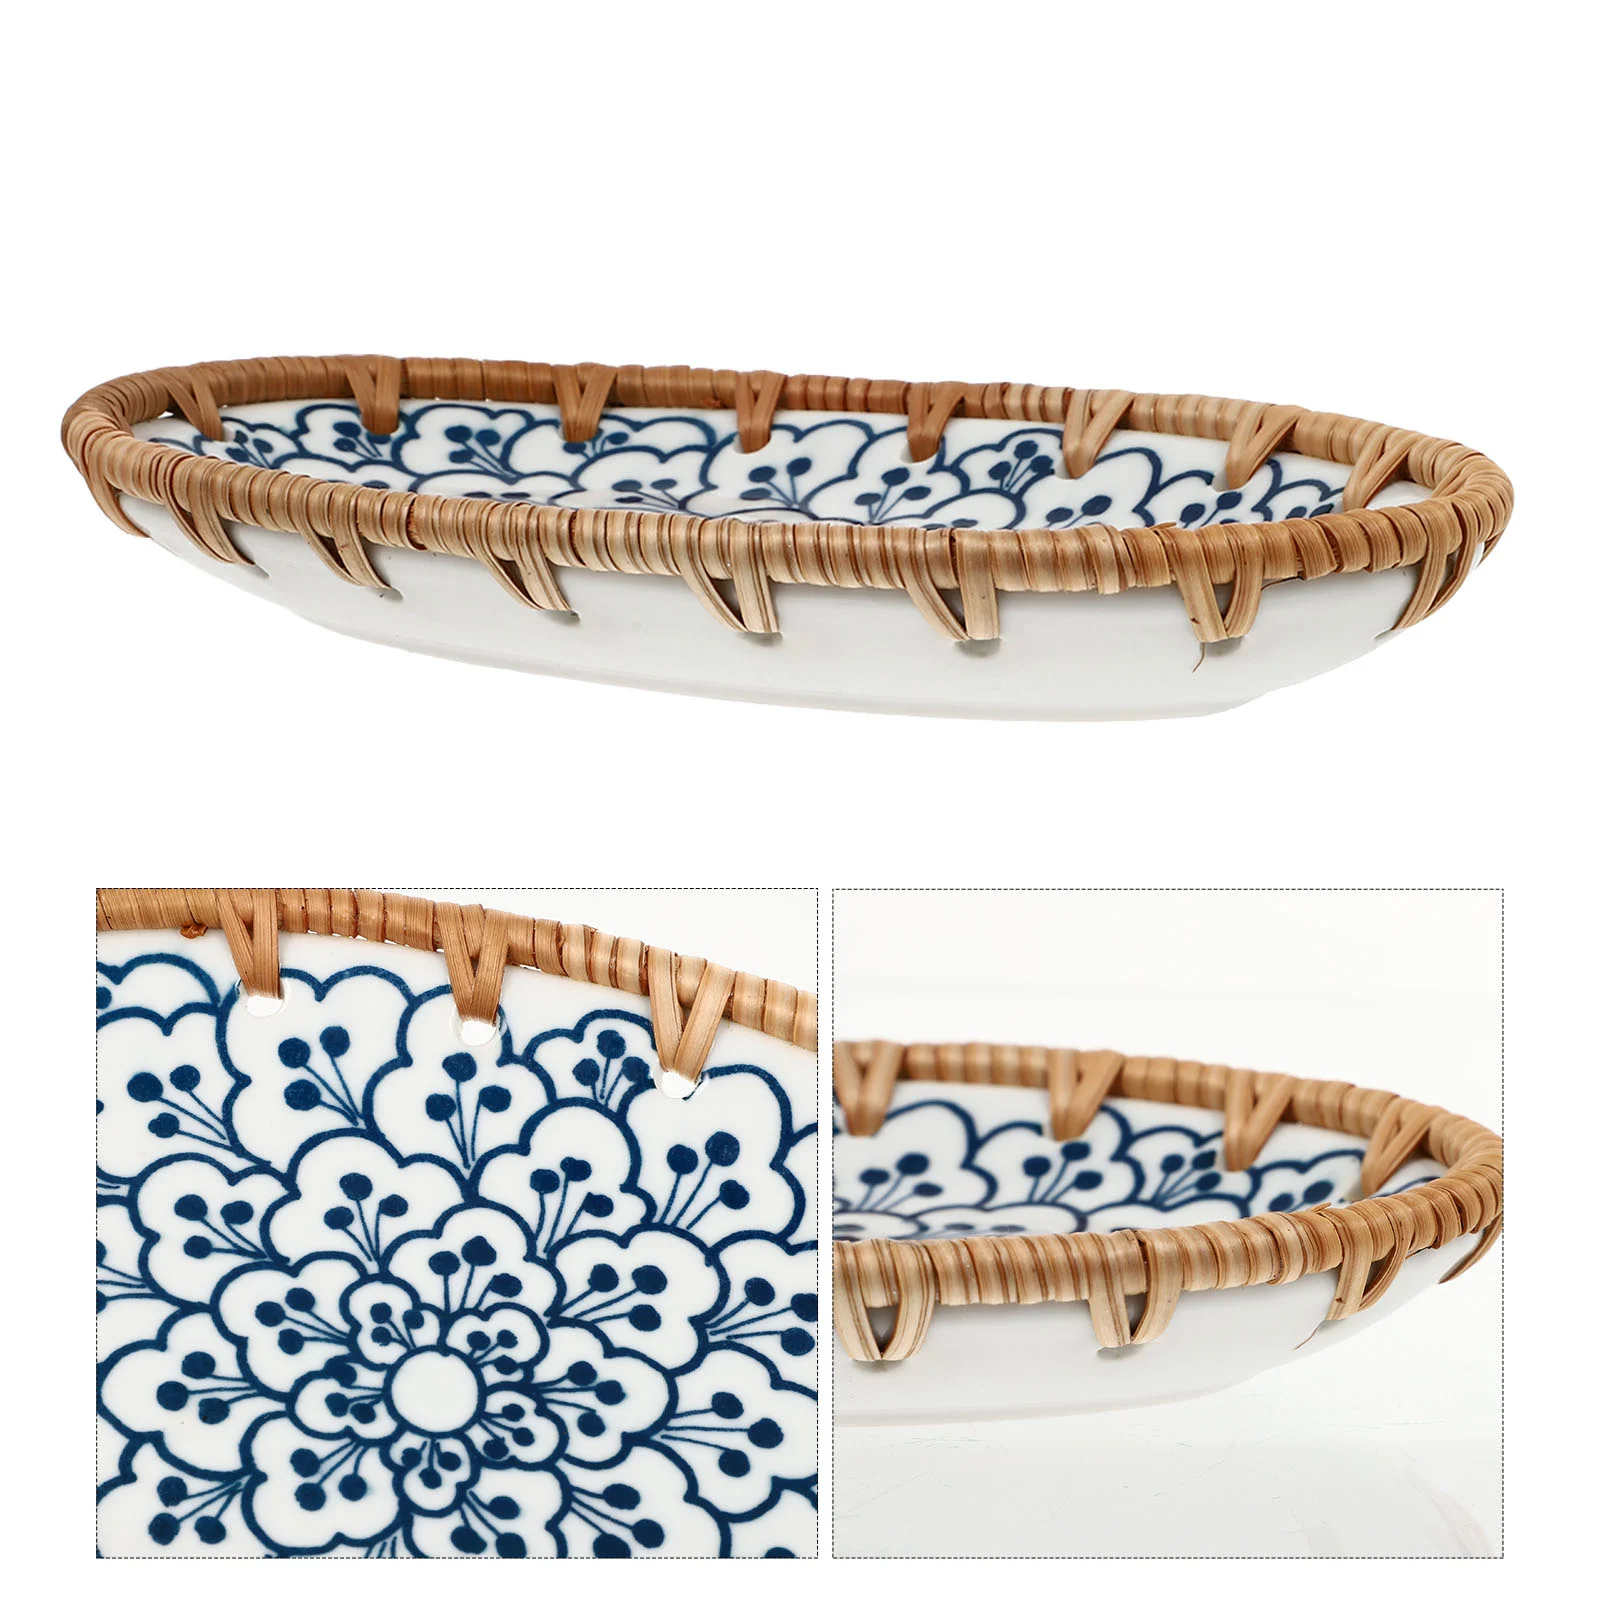 

Керамическая посуда, поднос для суши, ретро-блюдо, фарфоровая искусственная тарелка в японском стиле, креативная Бытовая керамика для малышей, керамика